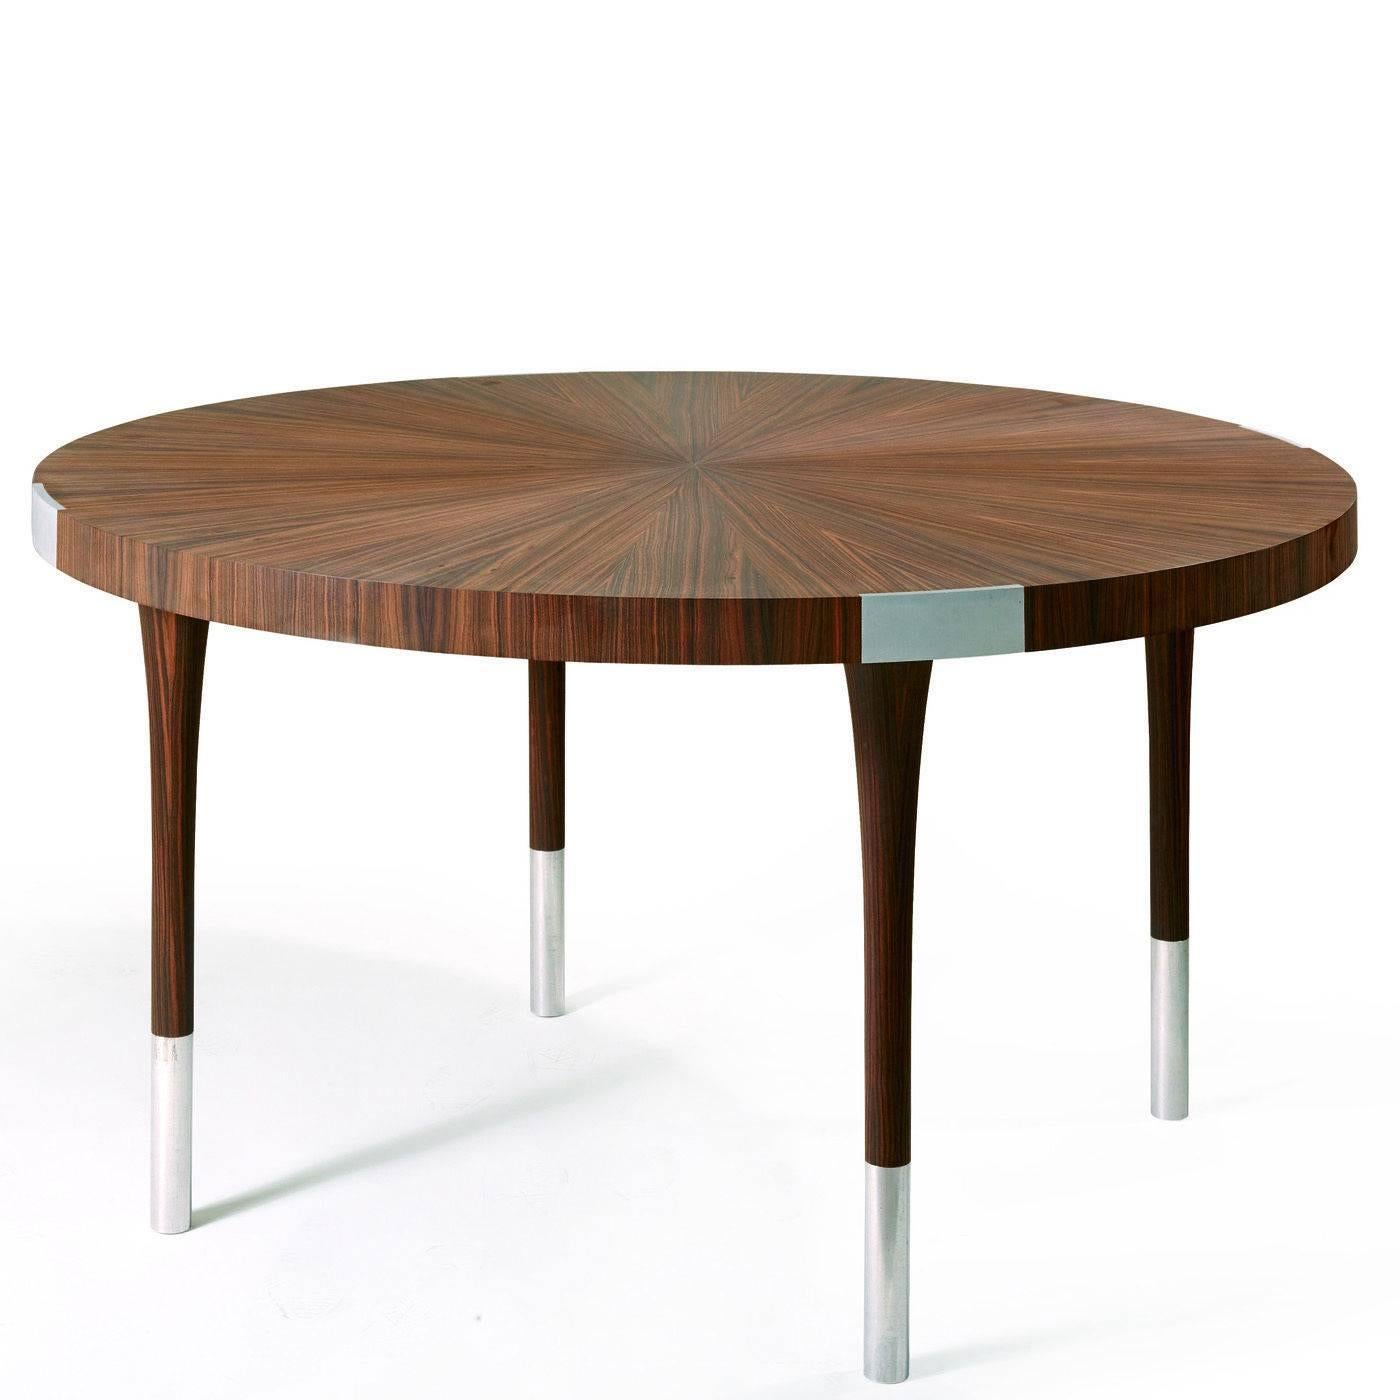 Cette élégante table ronde en bois de Macassar ébène, avec ses frappes marron foncé distinctives, est dotée d'inserts en aluminium avec une finition satinée. Le plateau est plaqué avec une technique traditionnelle d'incrustation de 